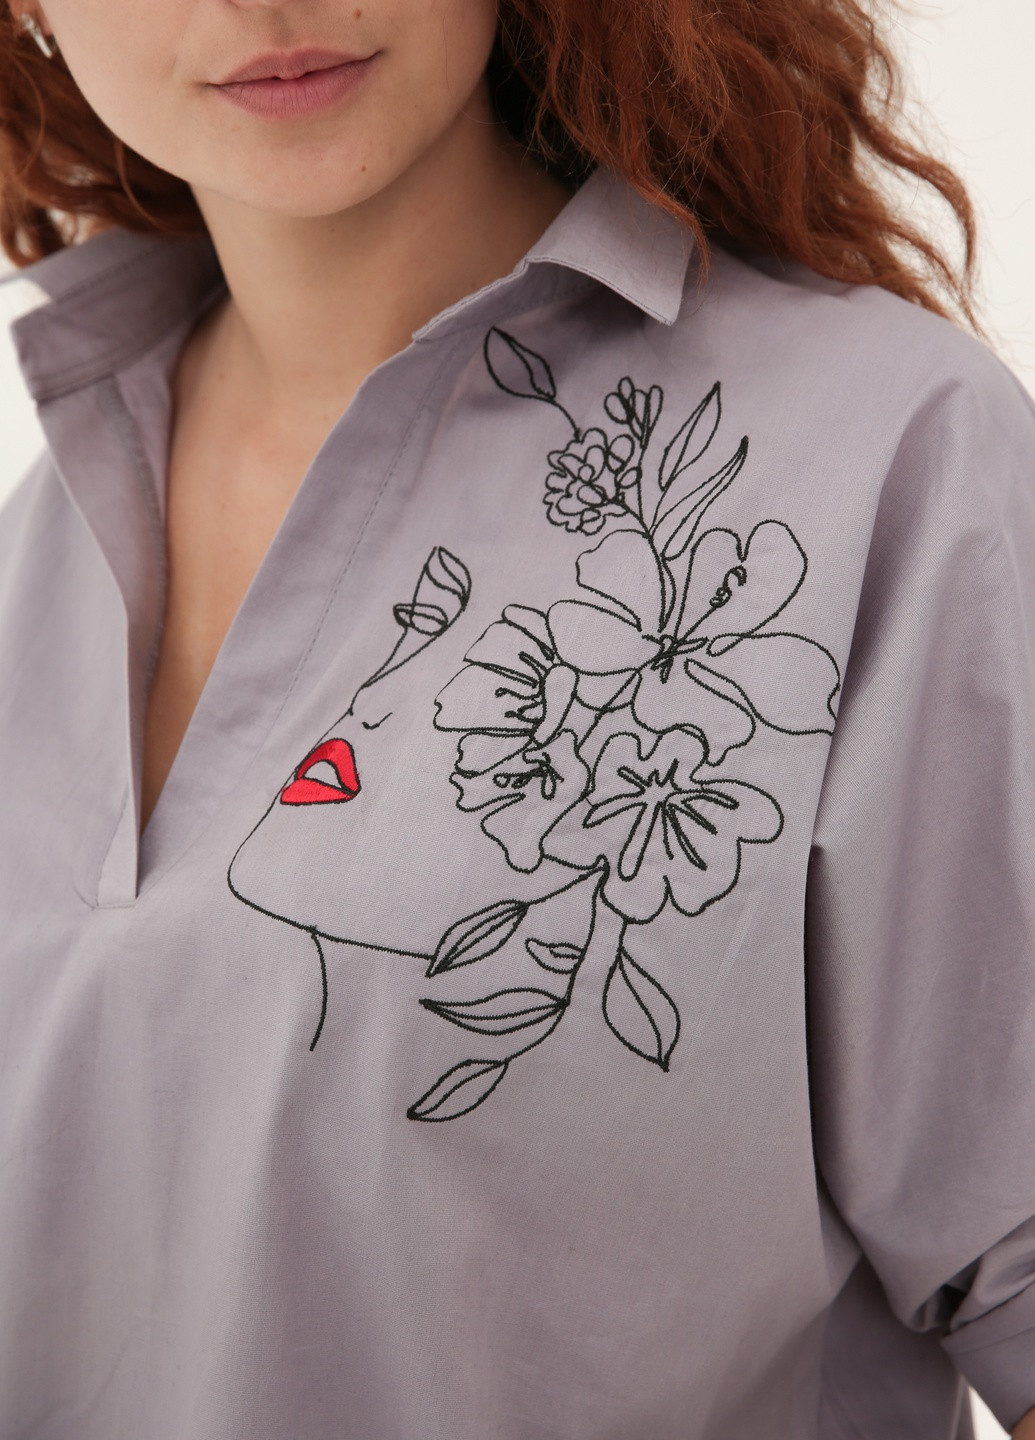 Сіра демісезонна сорочка-туніка оверсайз з модною вишивкою INNOE Блузка